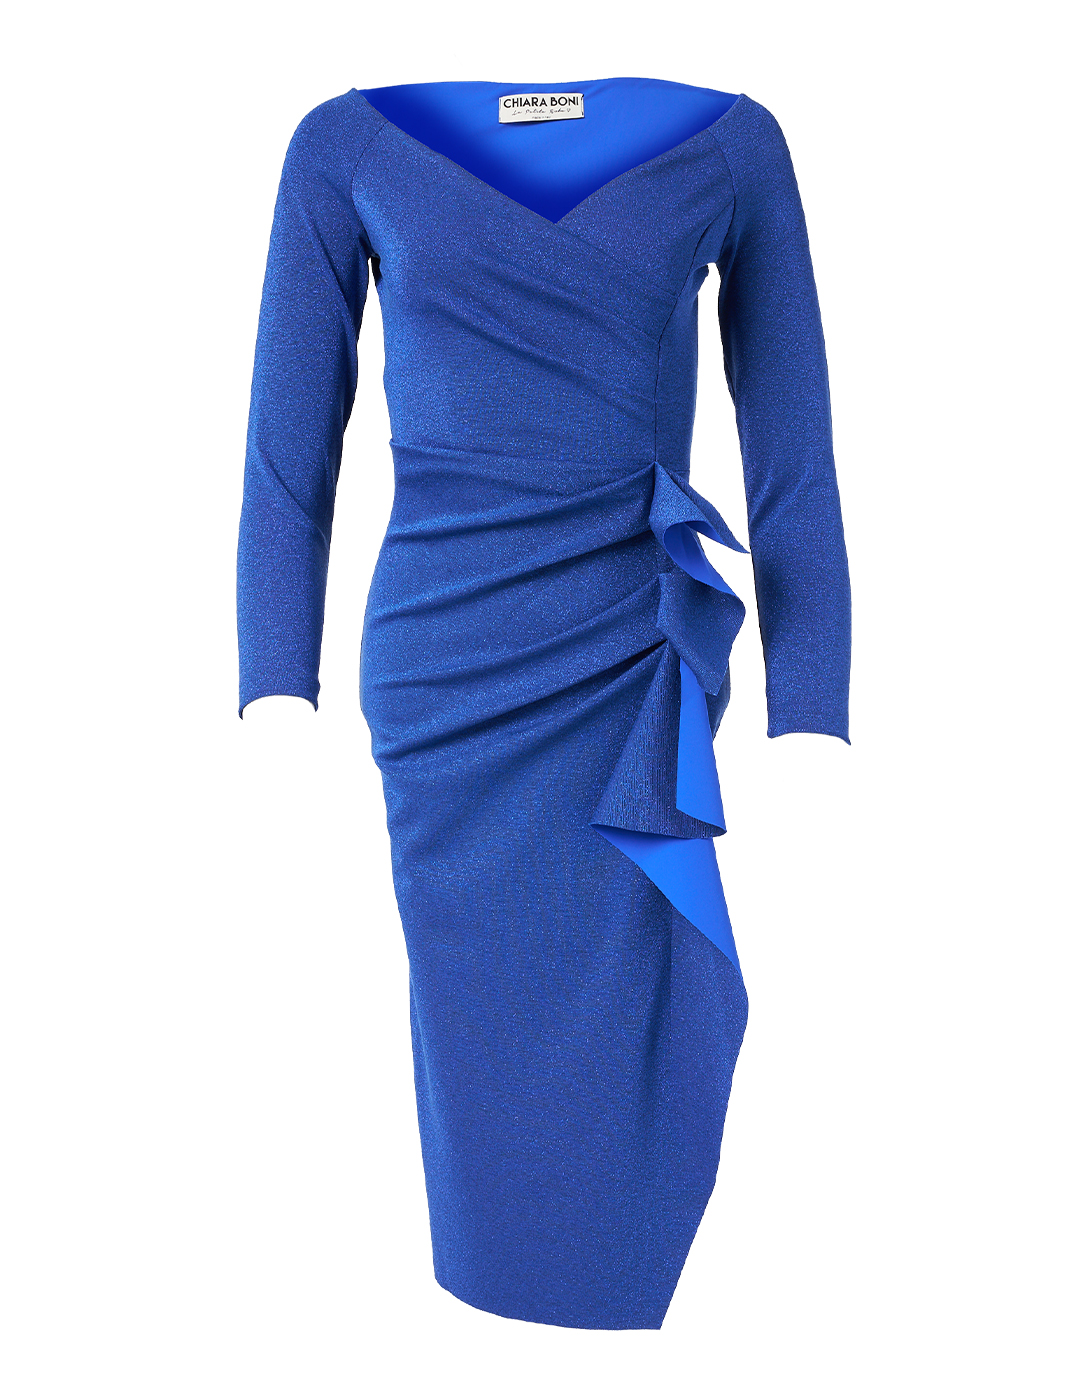 Silveria Cobalt Blue Lurex Stretch Dress | Chiara Boni La Petite Robe ...